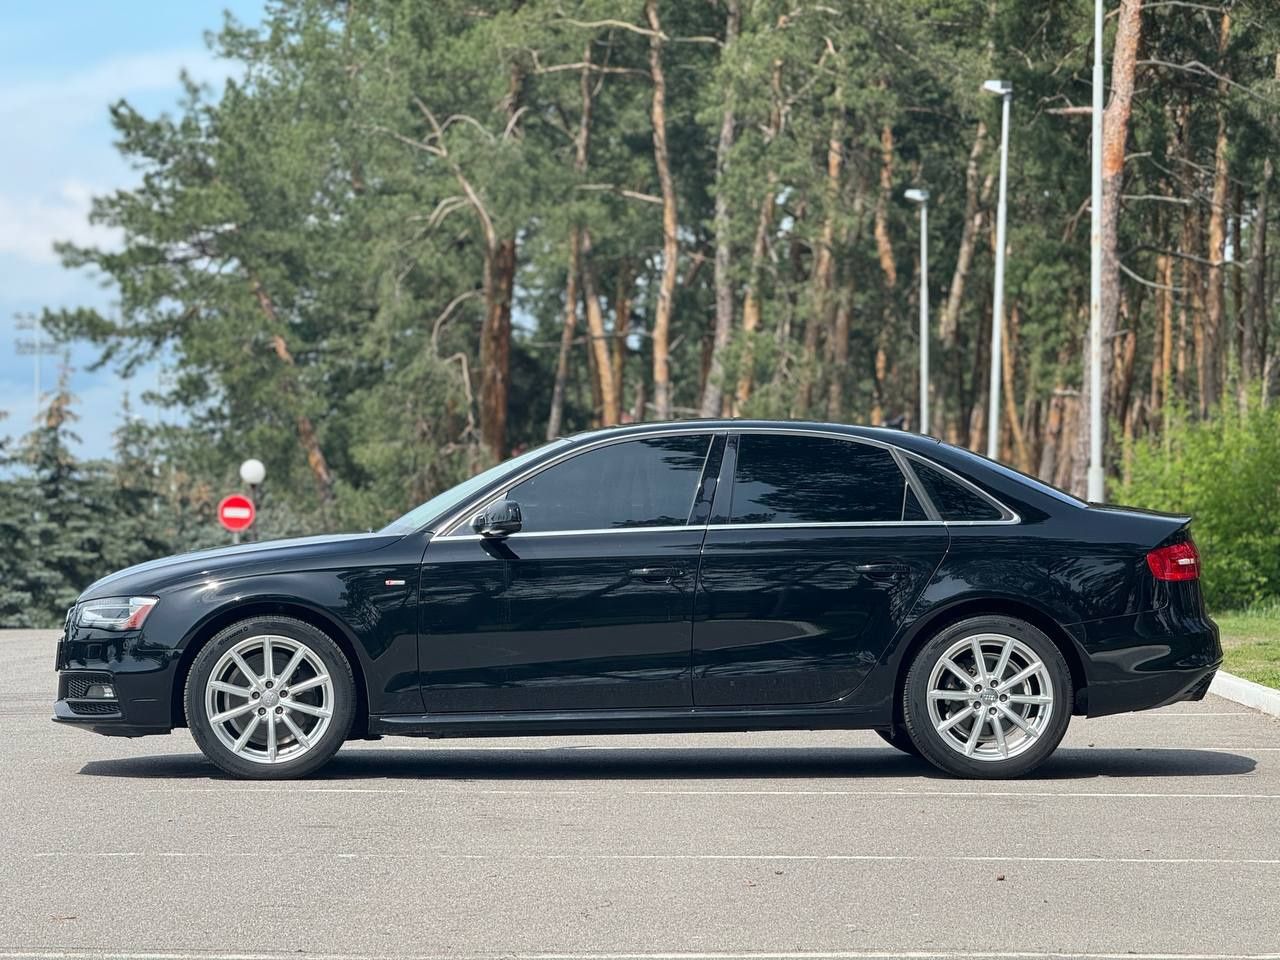 Audi А4 2015року, 2.0 бензин, автомат, передній привід, 198т.км.